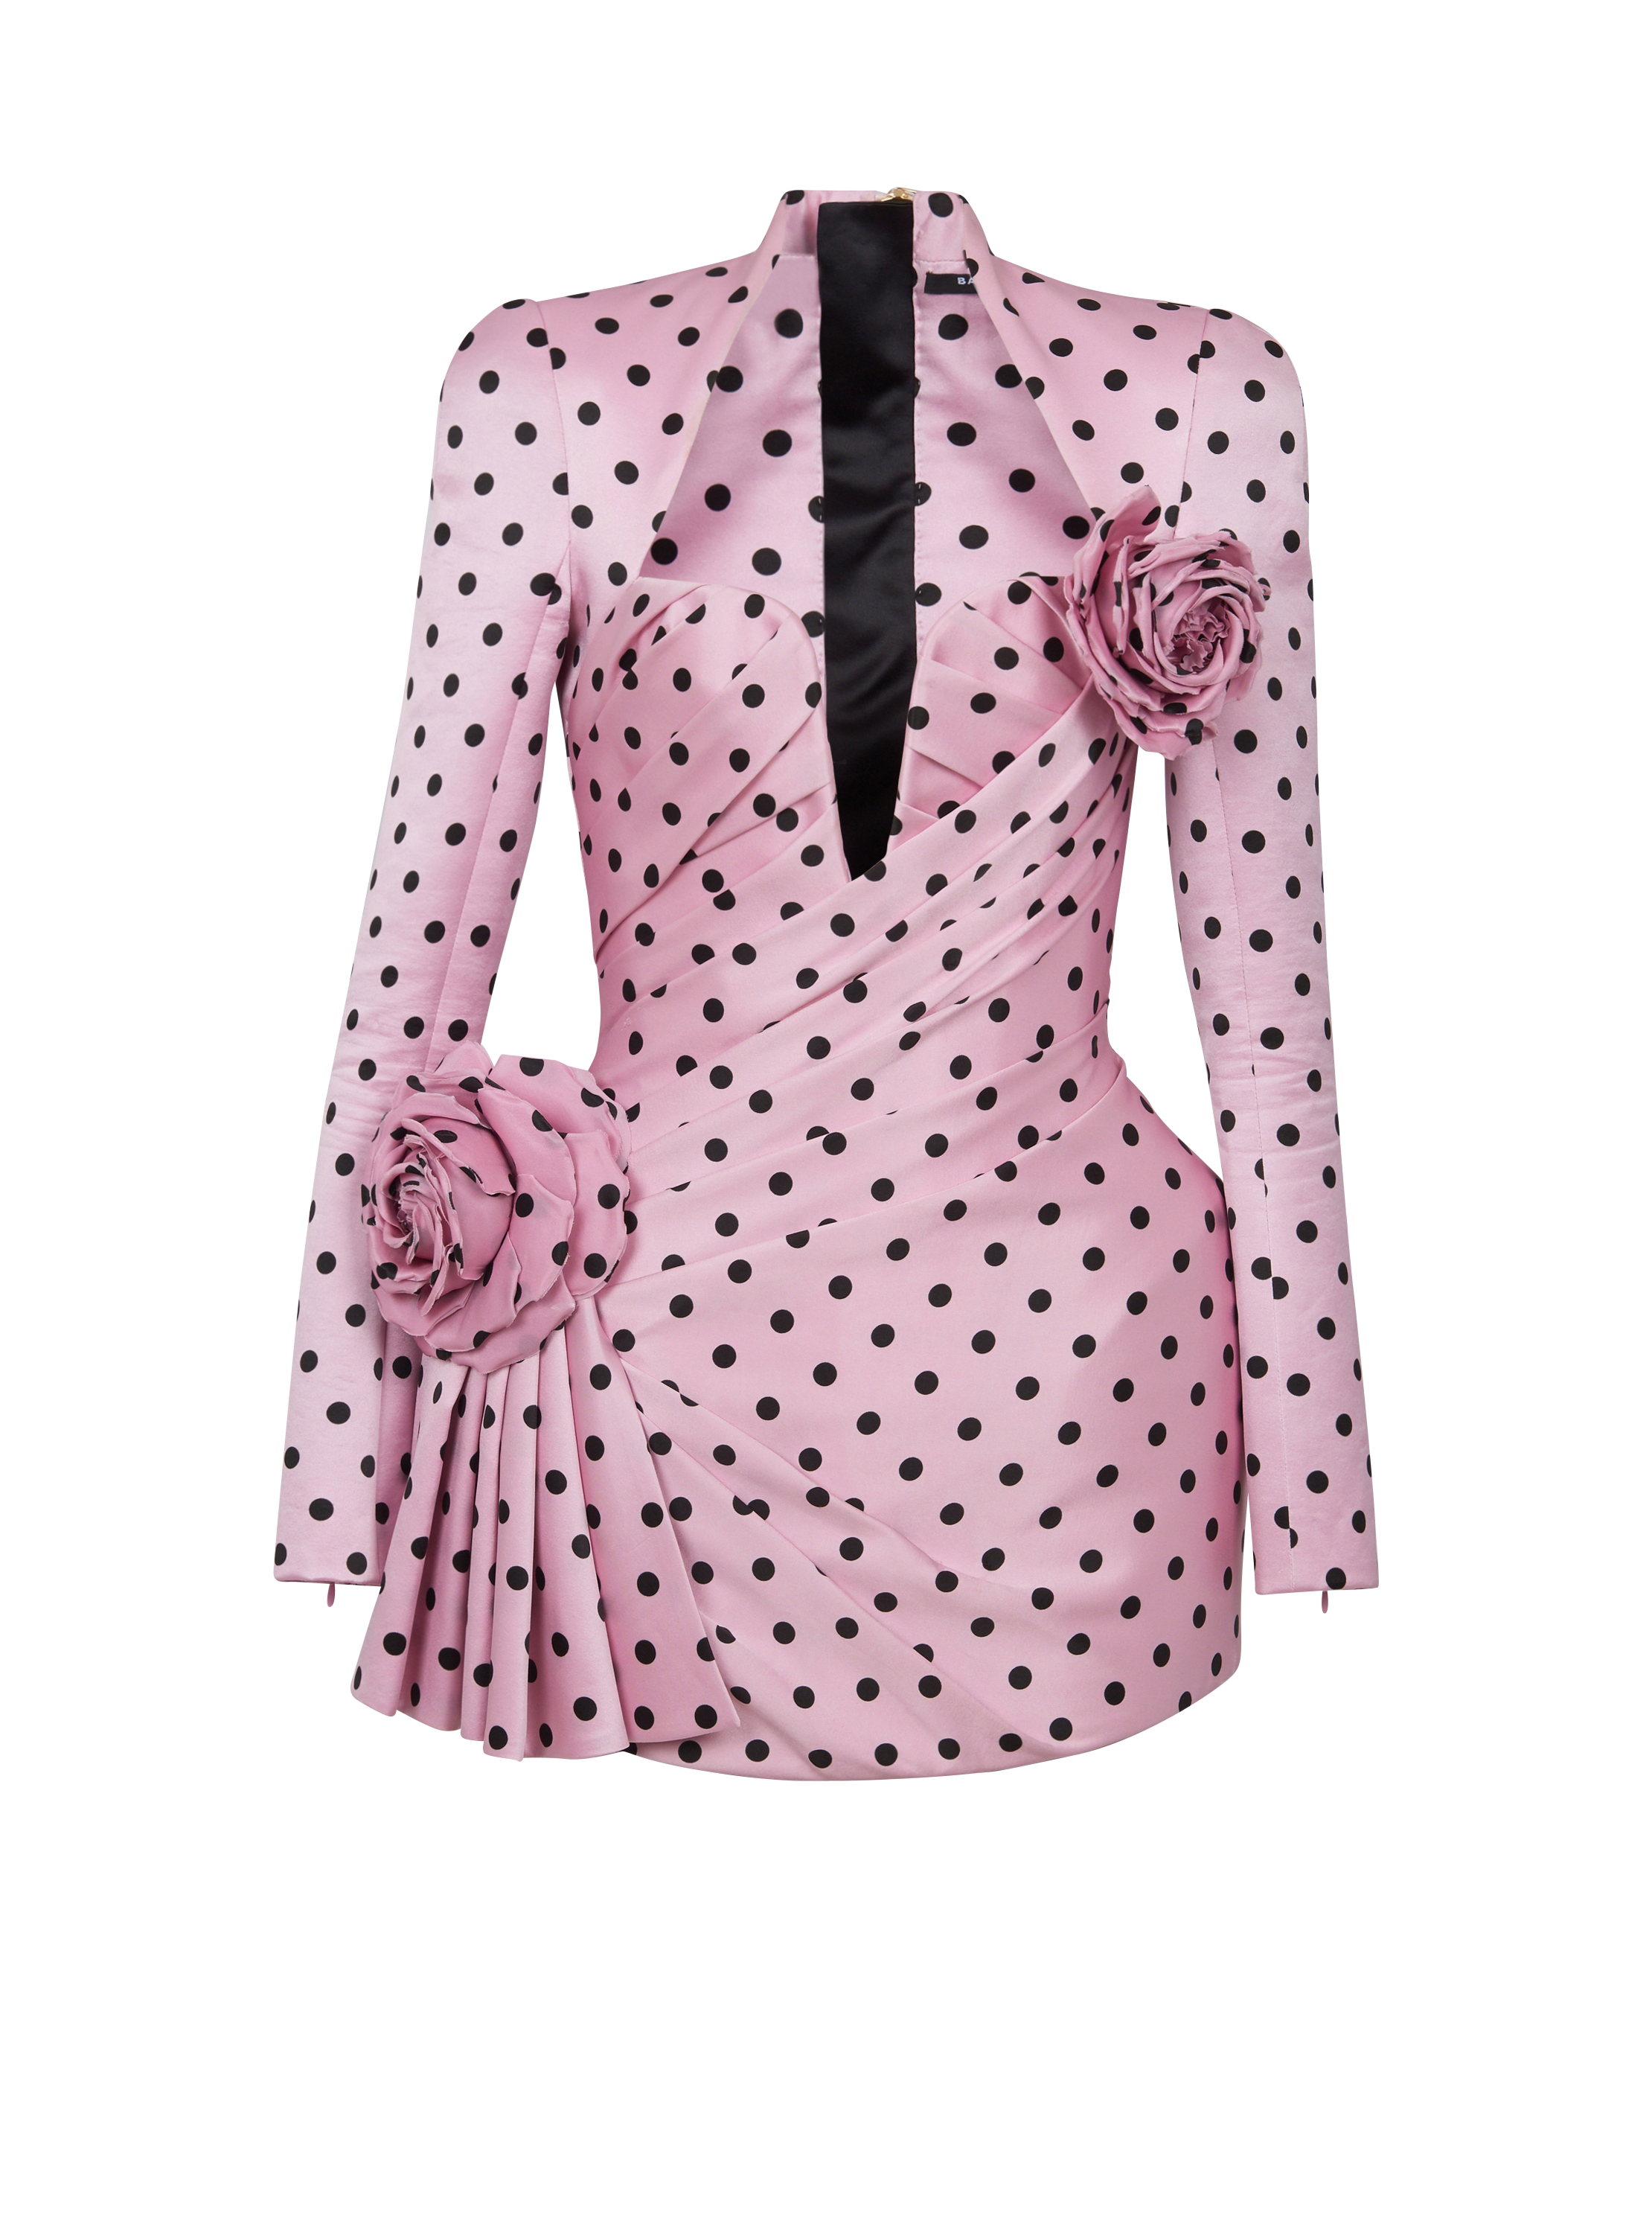 Polka Dots short printed dress, pink, hi-res